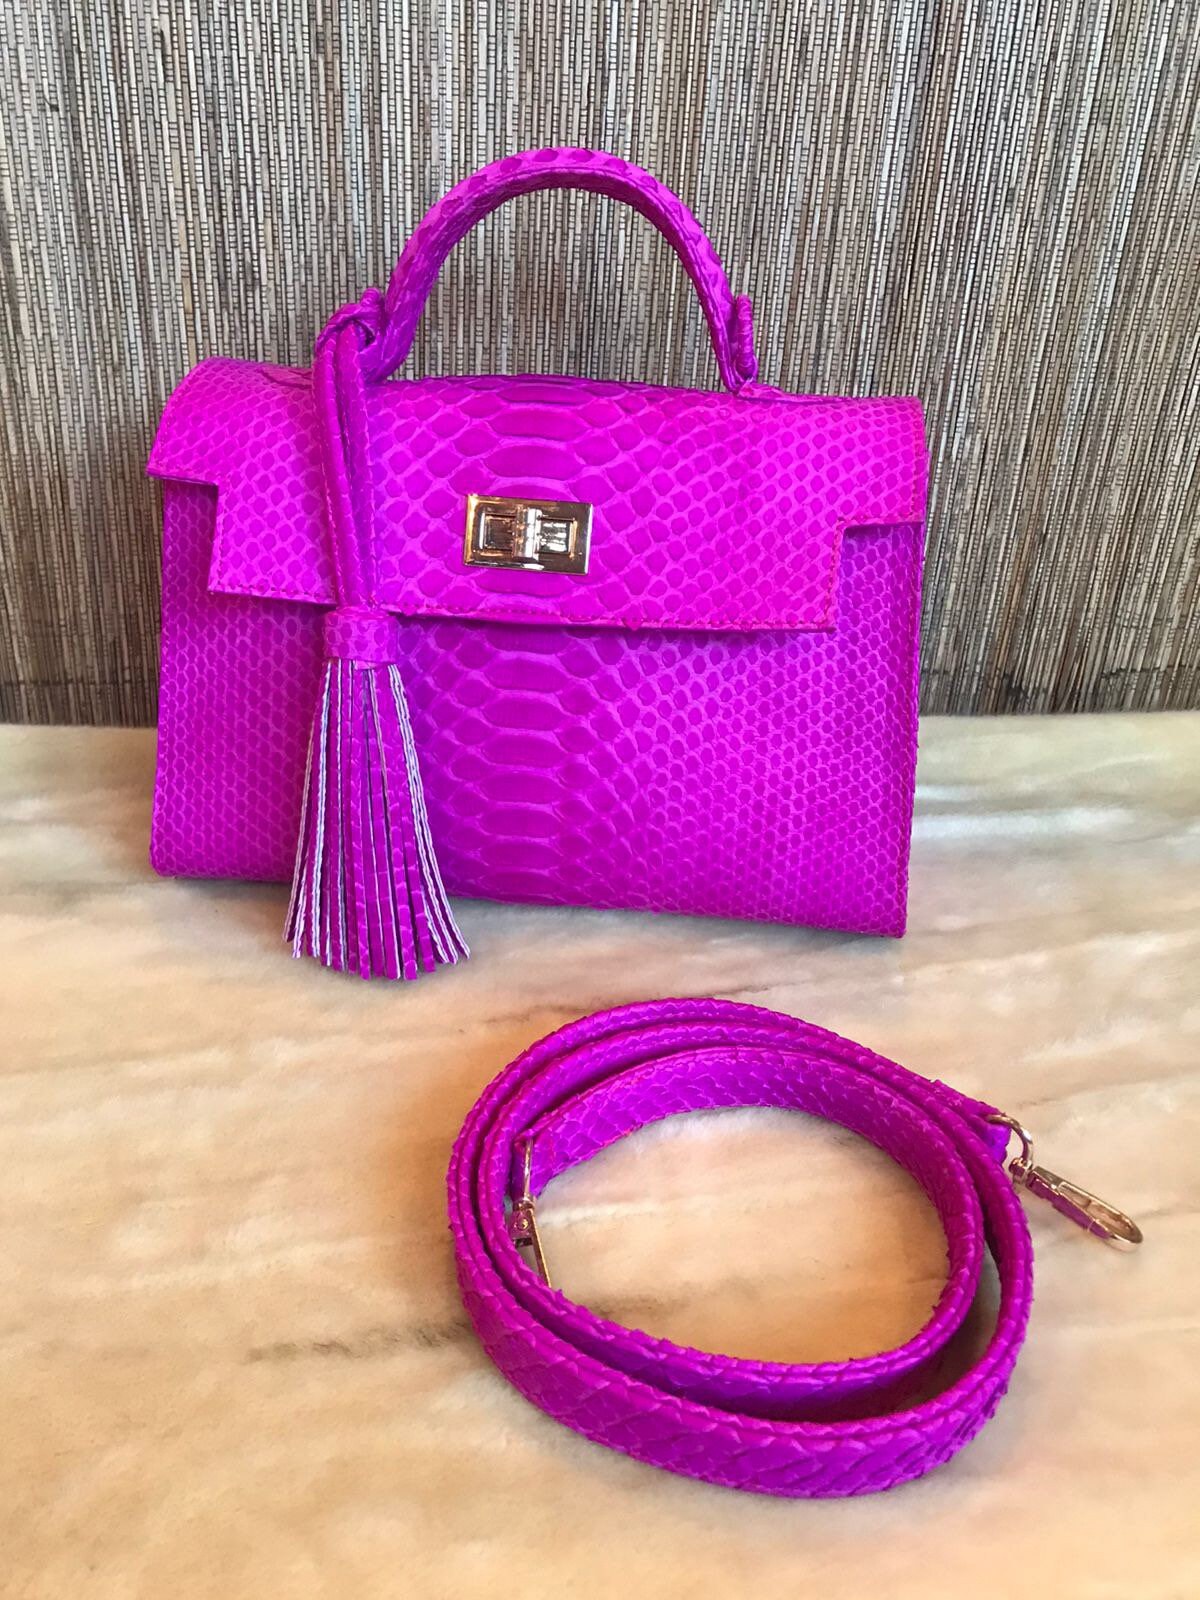 11 Trendy Hot Pink Handbags an Editor Loves